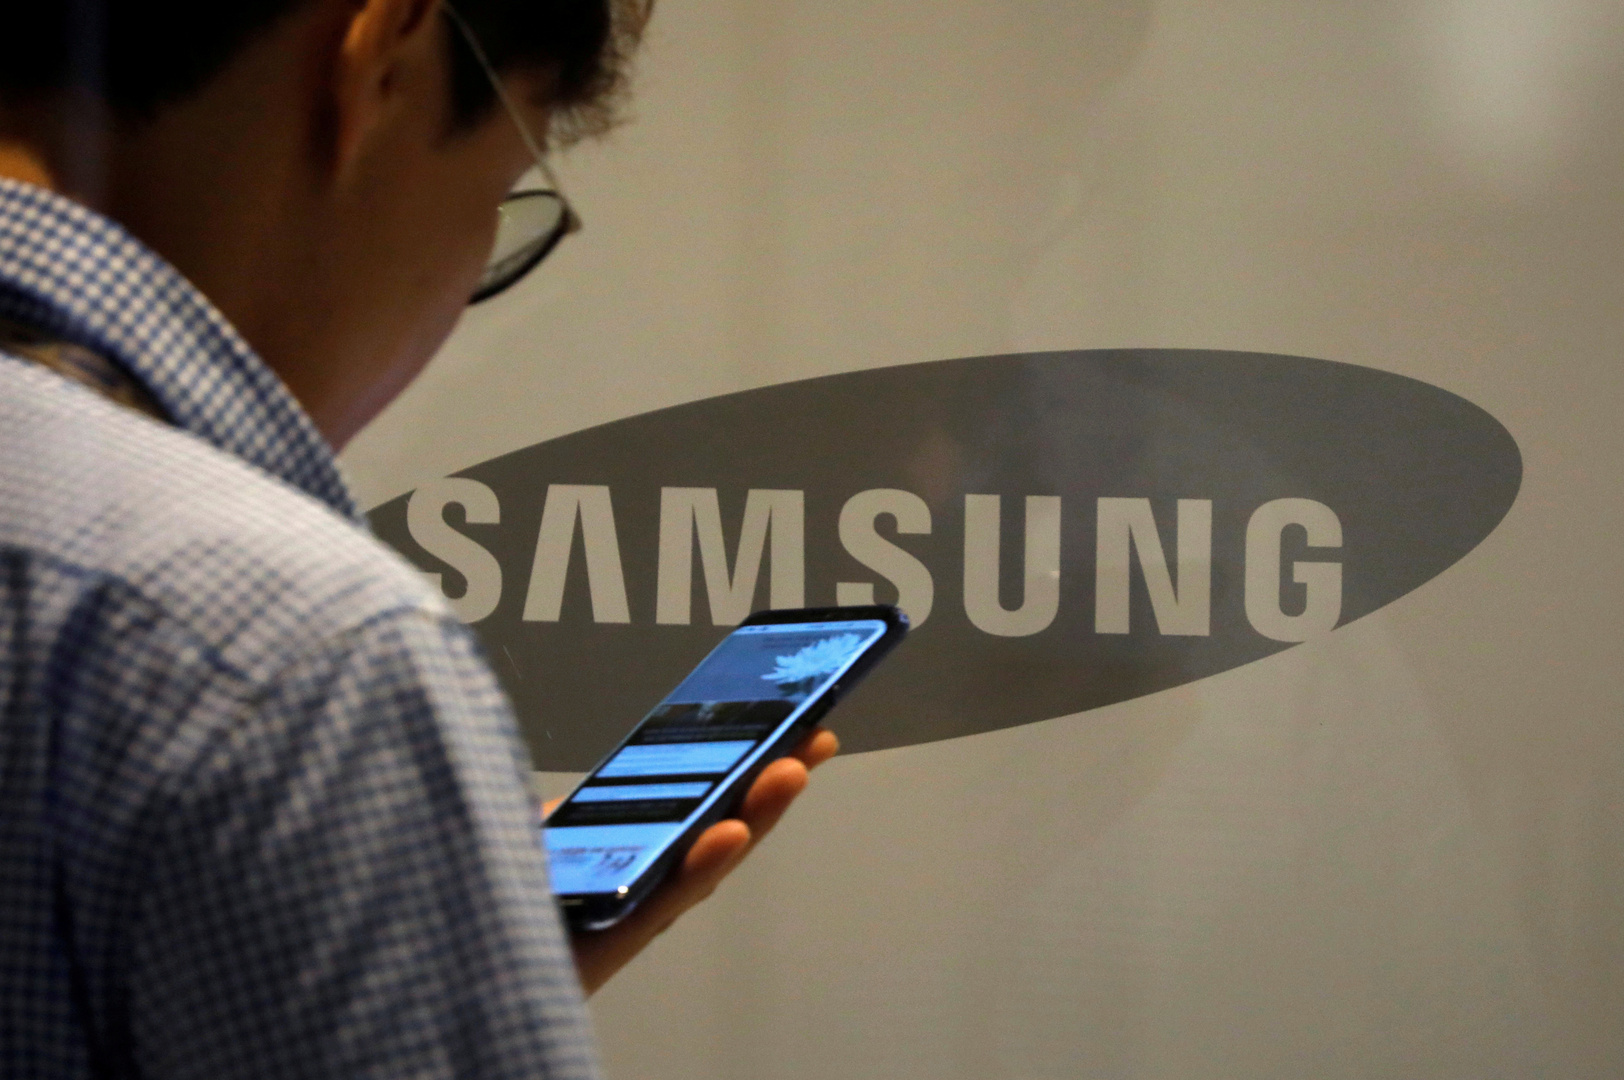 هاتف آخر سيعزز صدارة سامسونغ في سوق الأجهزة الذكية